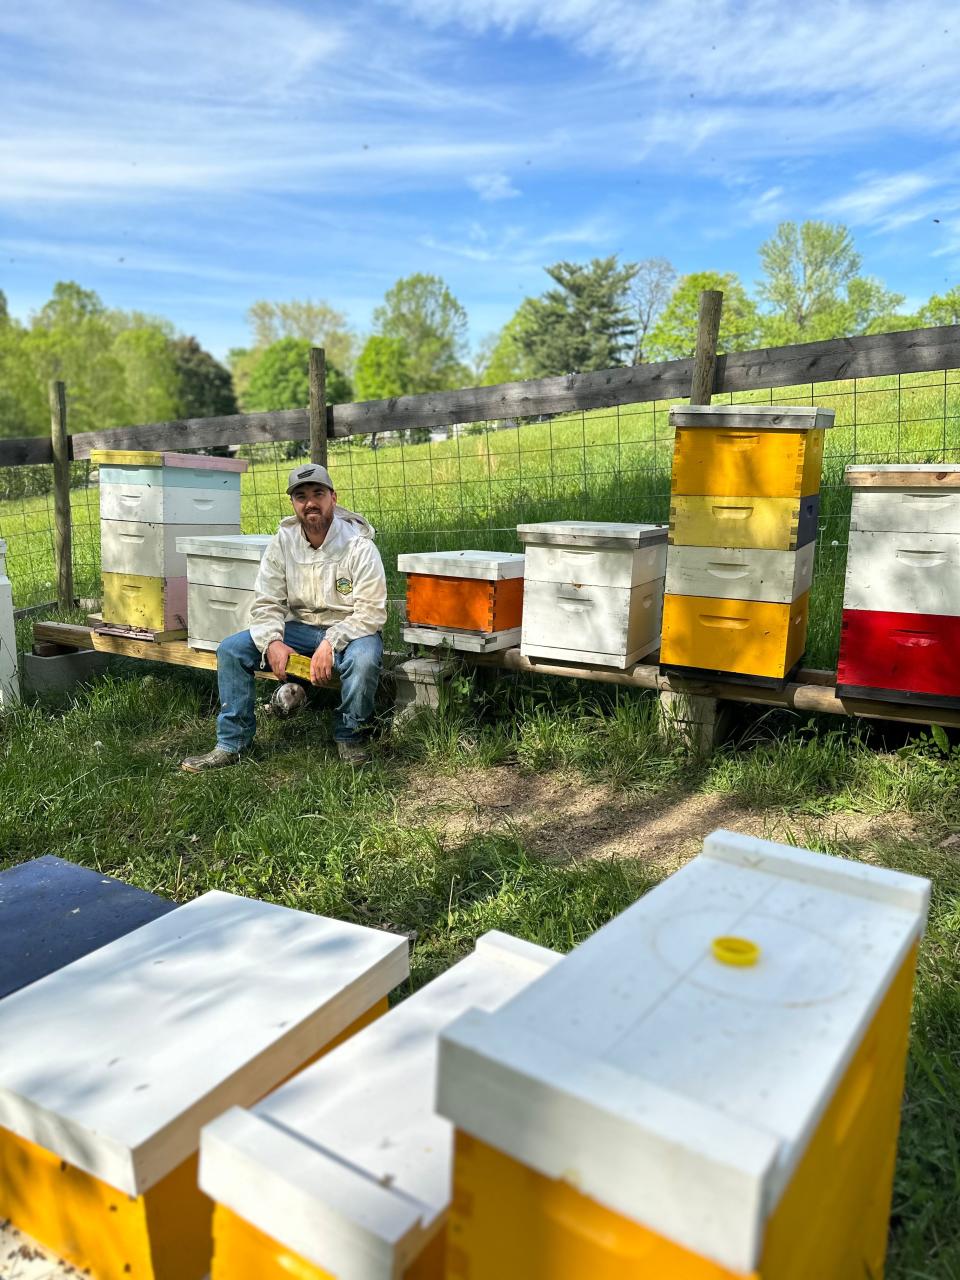 Chad Edwards among several bee hives Brown Bear Honey uses.